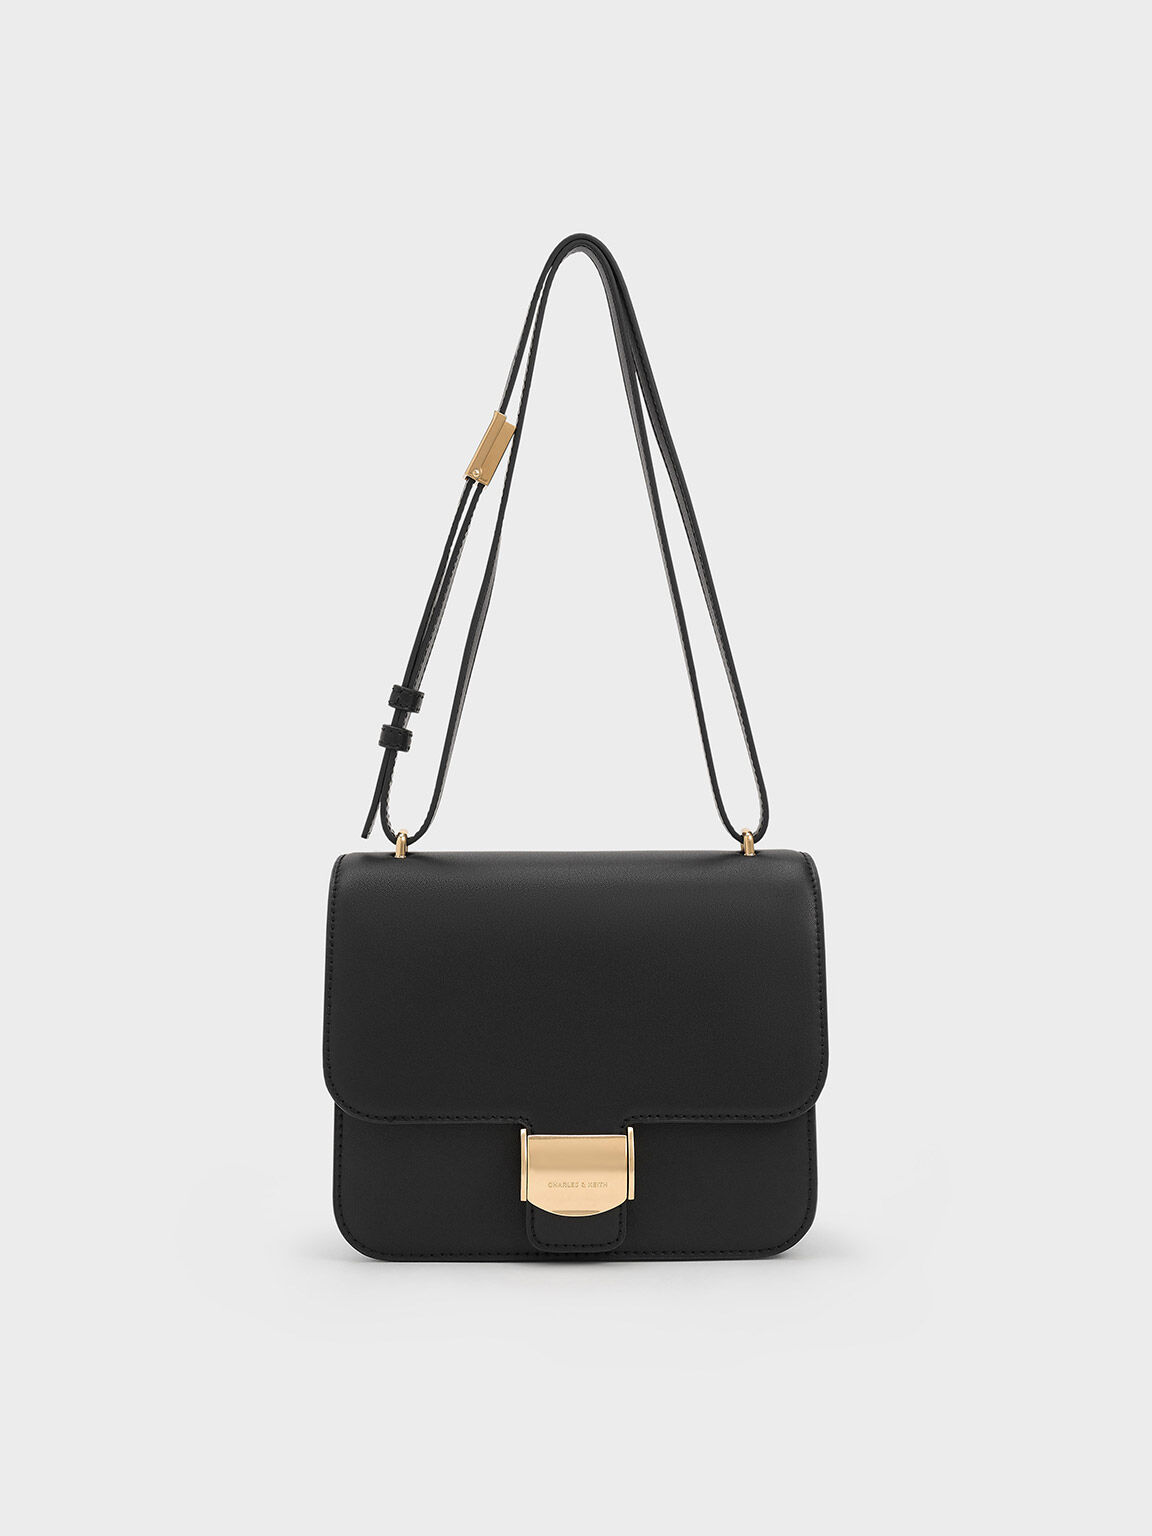 กระเป๋าทรงกล่องรุ่น Violetta, สีดำ, hi-res